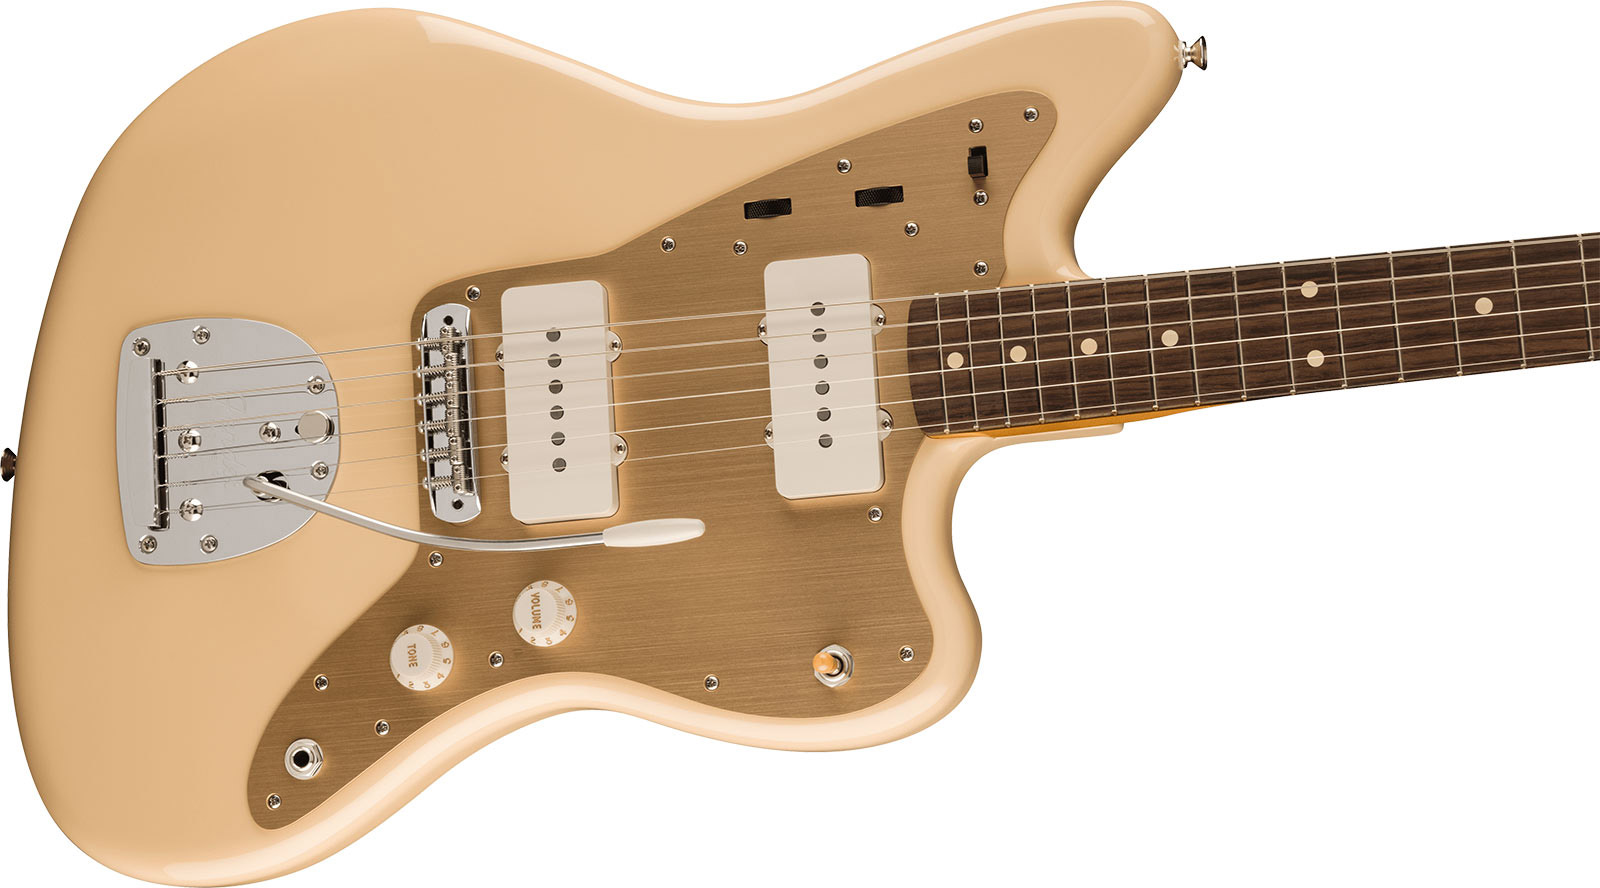 Fender Jazzmaster 50s Vintera 2 Mex 2s Trem Rw - Desert Sand - Retro-rock elektrische gitaar - Variation 2